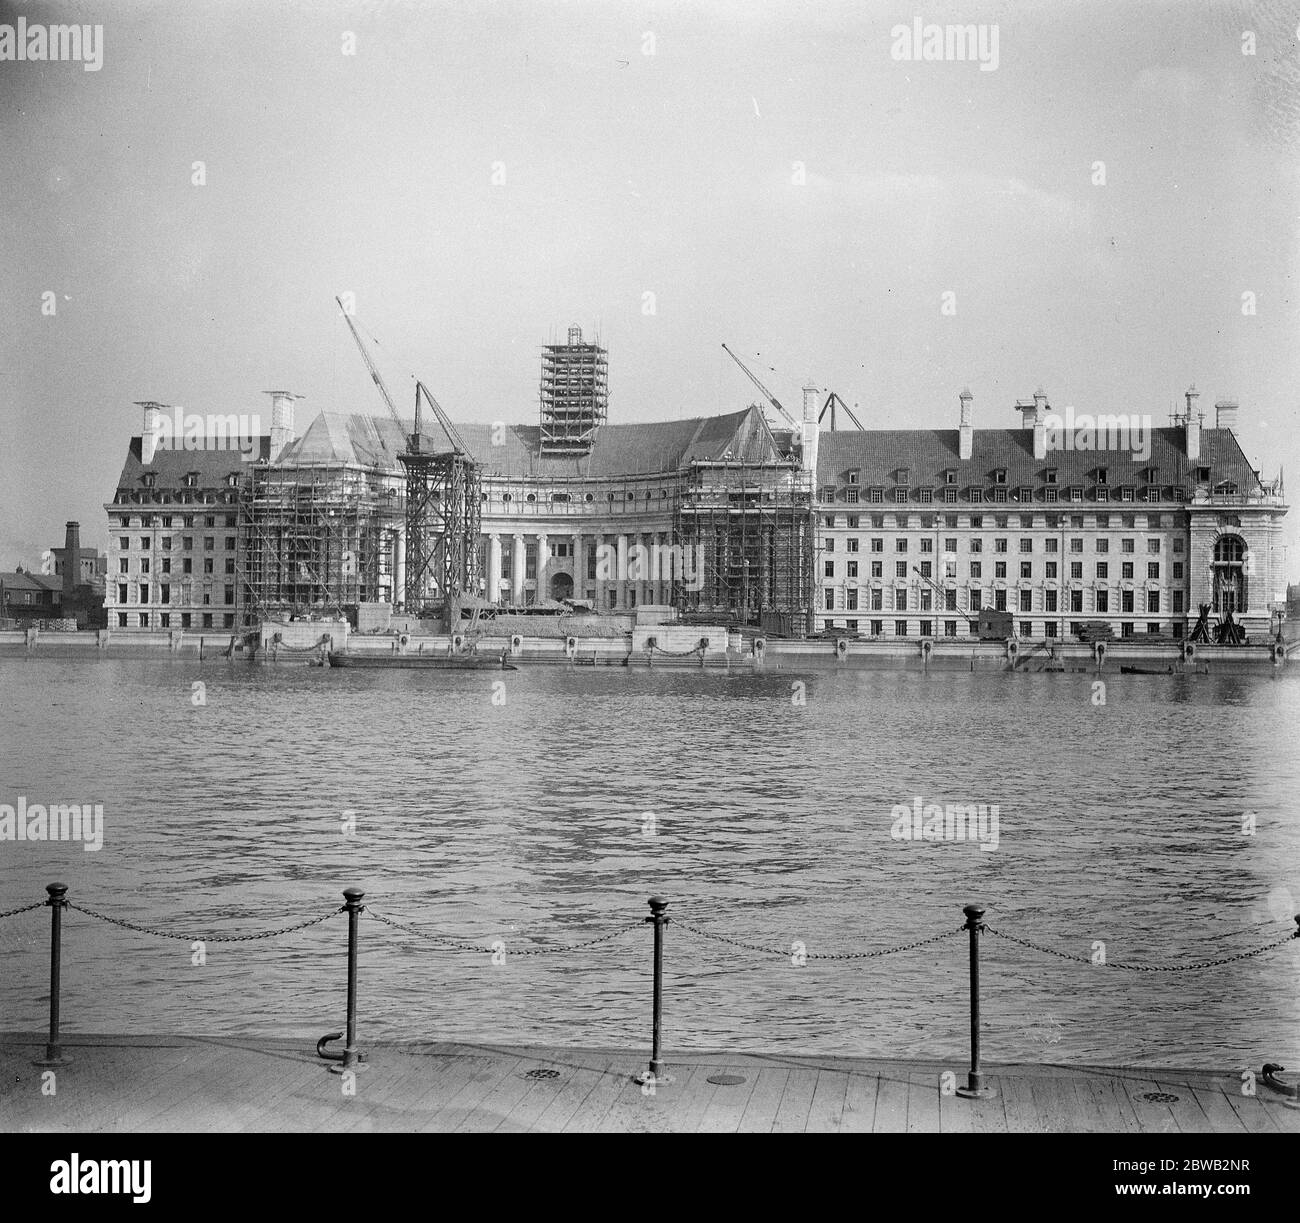 London 's New Palace an der Themse EINE beeindruckende Aussicht auf die neue London County Council Hall, in der Nähe der Westminster Bridge. Der geschwungene Mittelblock, der die Mitgliederterrasse bildet, ist ein Interessantes Merkmal des Gebäudes, das jetzt vom Personal am 4. Oktober 1921 übernommen wird Stockfoto